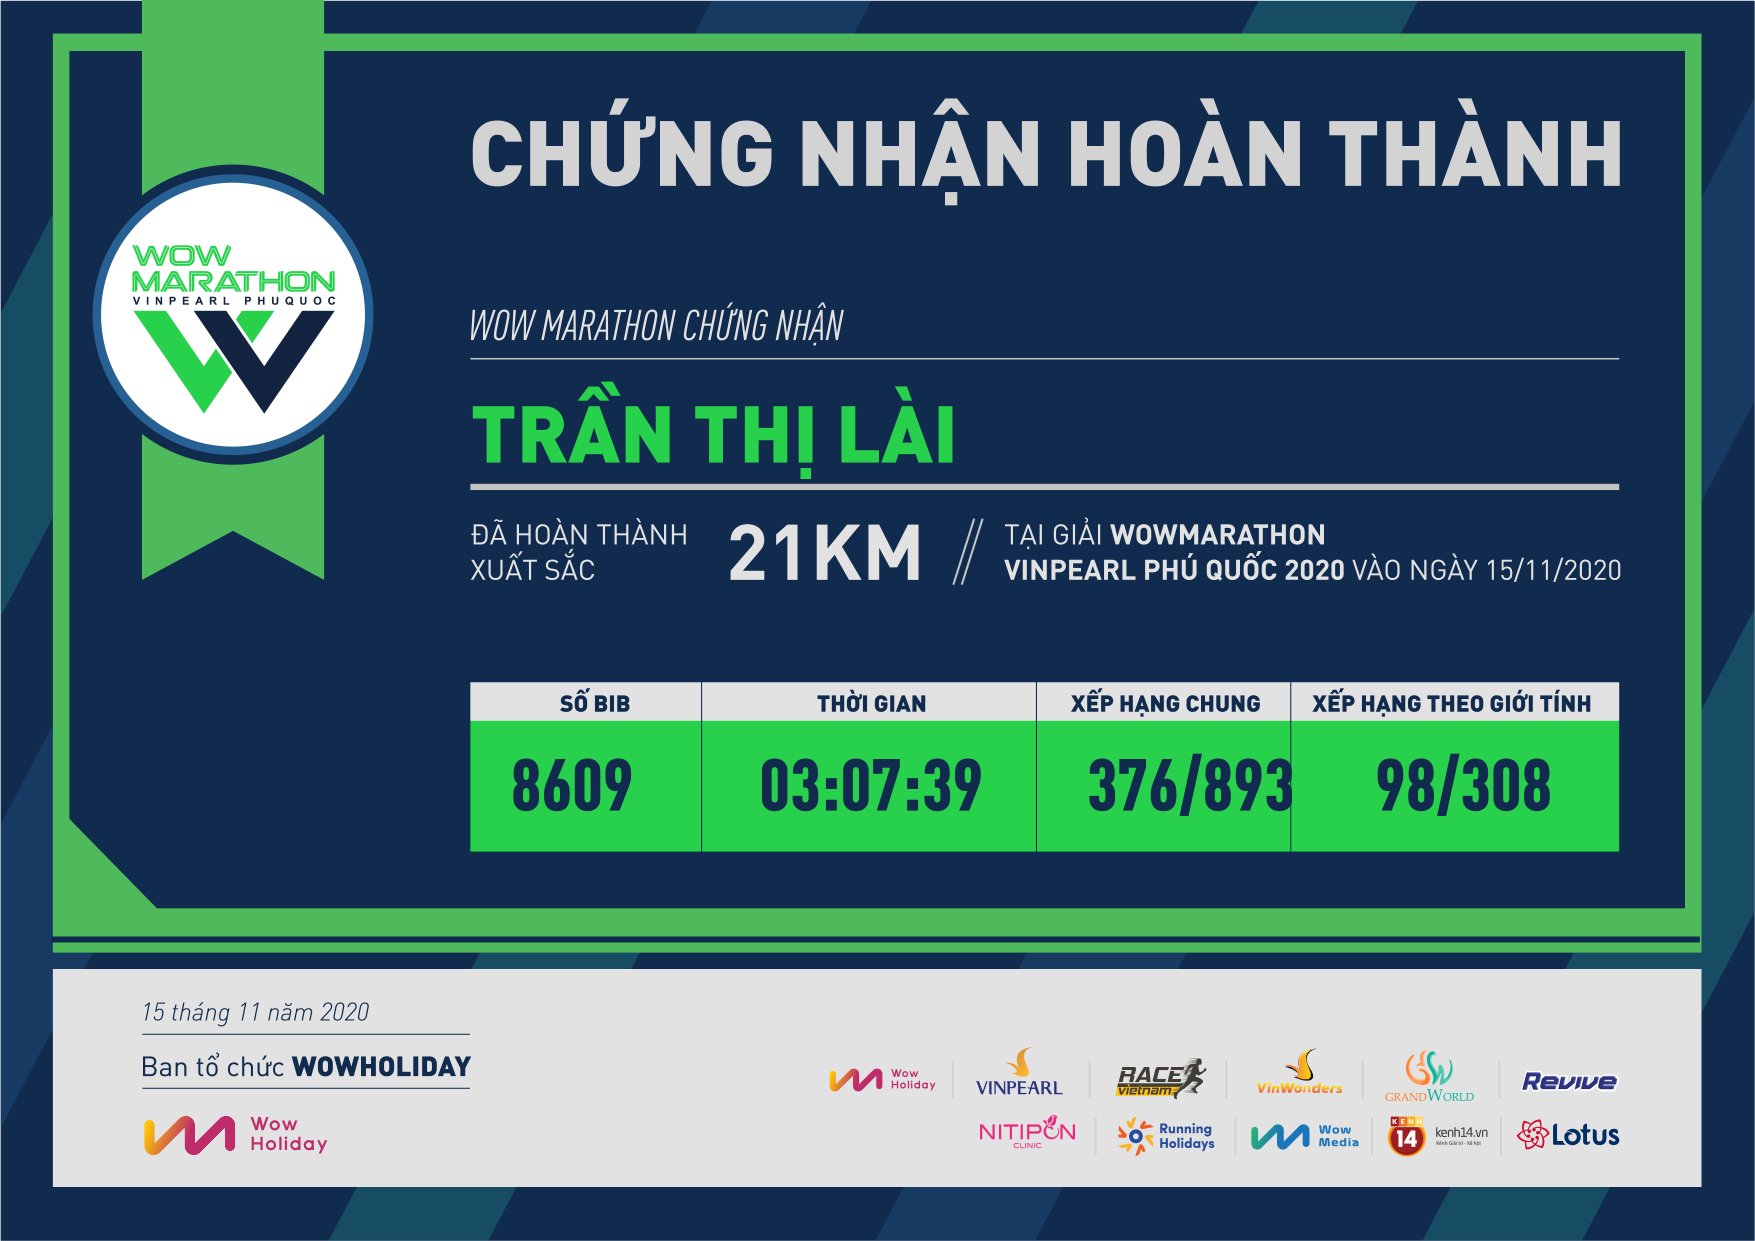 8609 - Trần Thị Lài